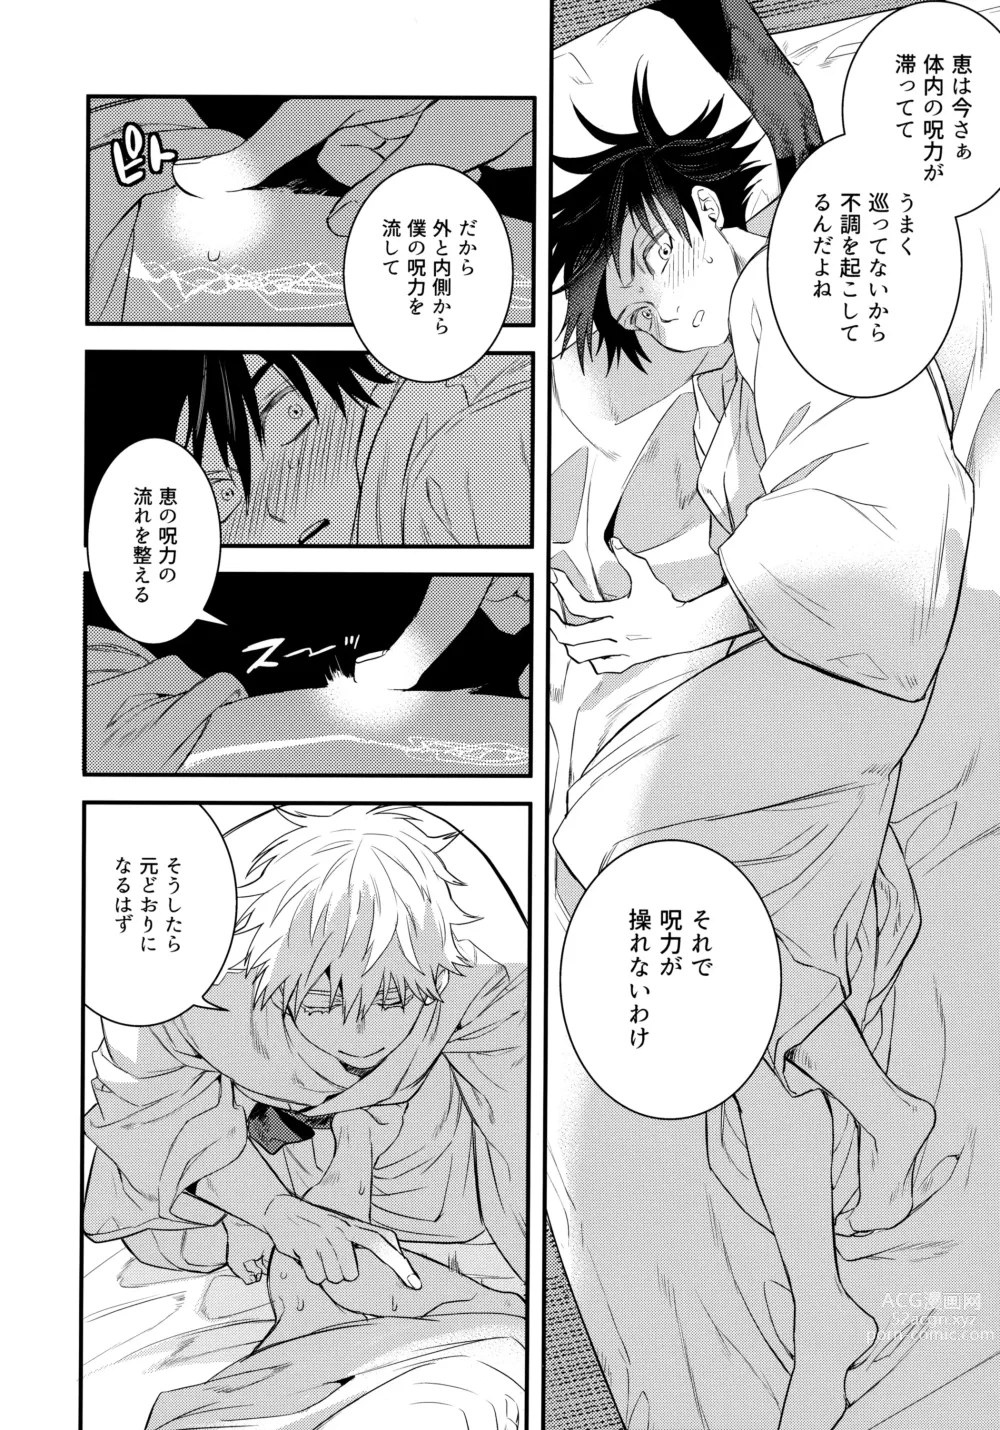 Page 7 of doujinshi Jyuryoku no Koukan Dekiru?